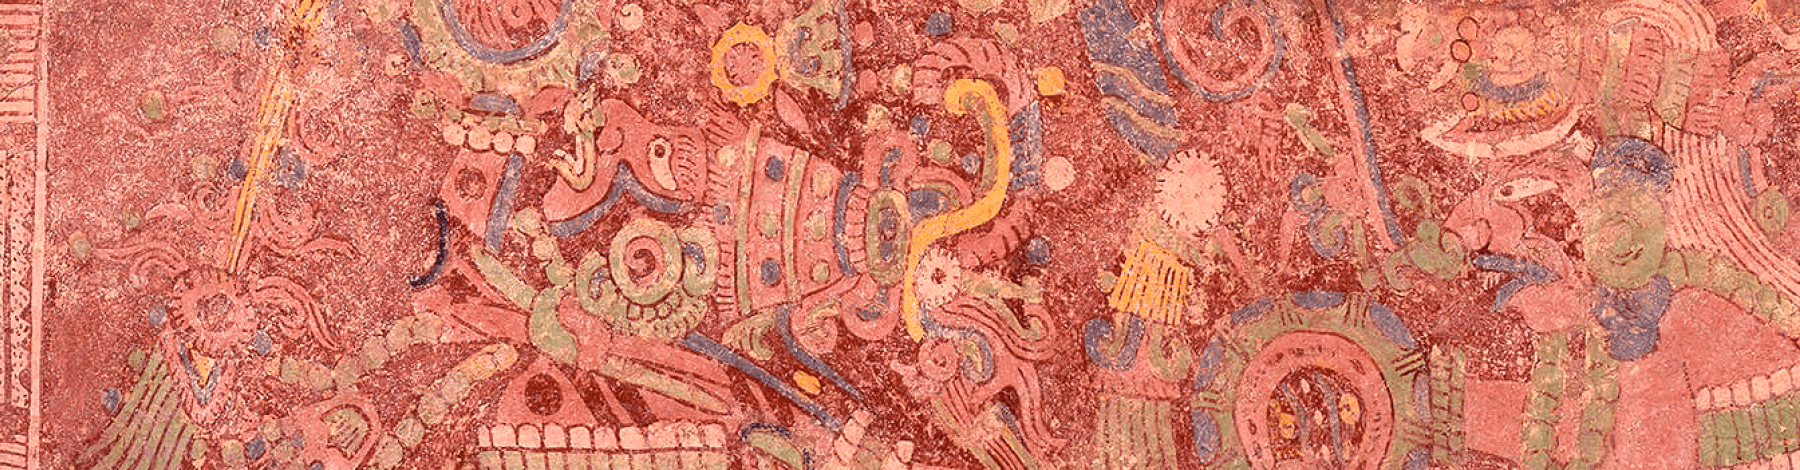 Cuadernillo:  Pintura mural | Museo Amparo, Puebla | Museo Amparo, Puebla.